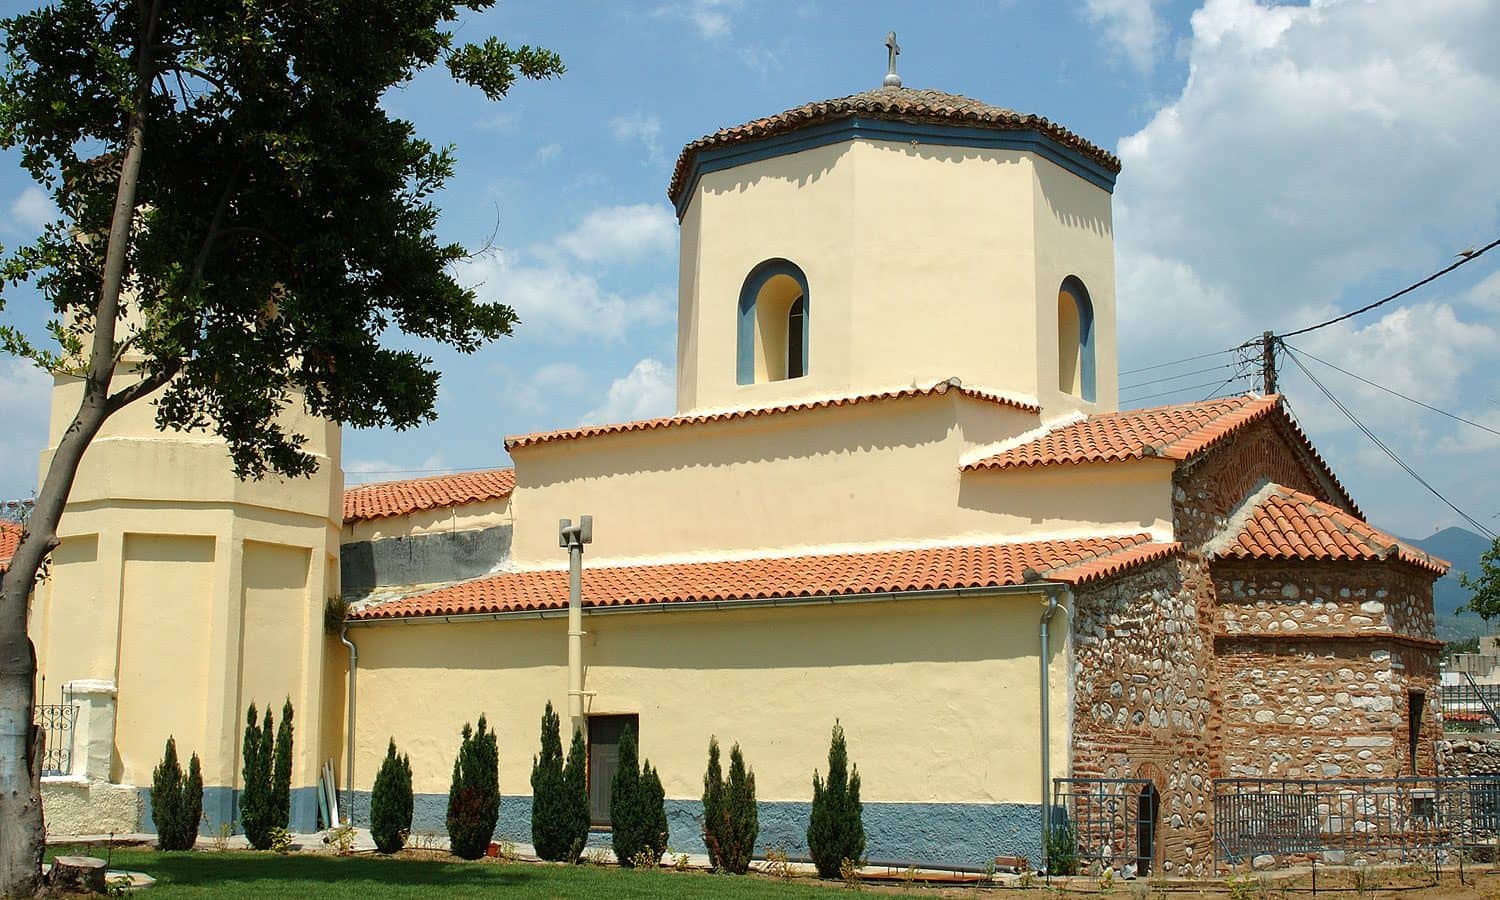  Αγία Σοφία: Ο Βυζαντινός ναός της Δράμας